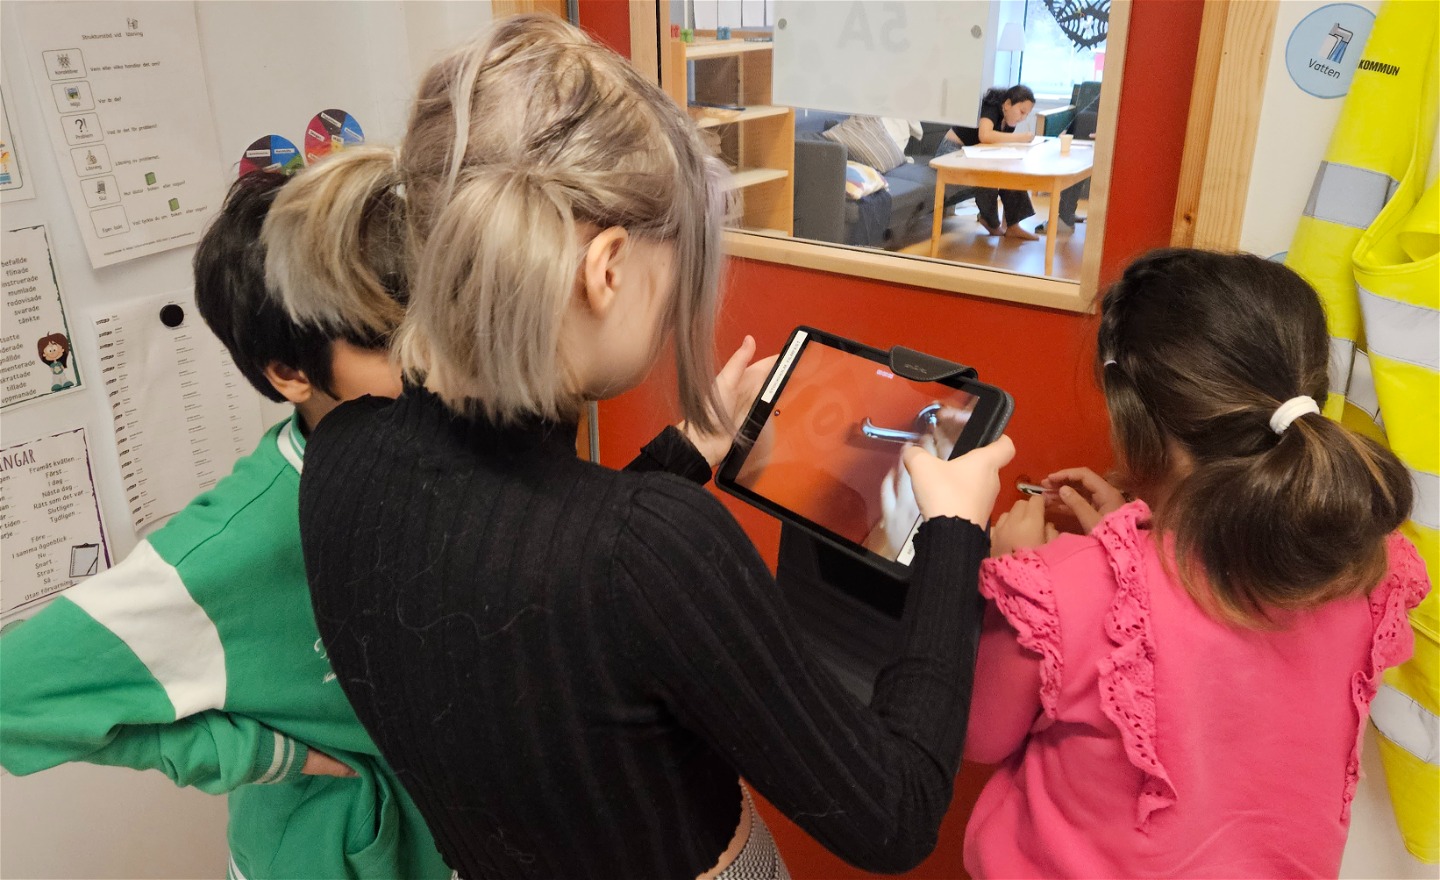 Tre barn står i en halvcirkel, barnet imitten håller en iPad och filmar när barnet till höger rycker i dörrhandtaget